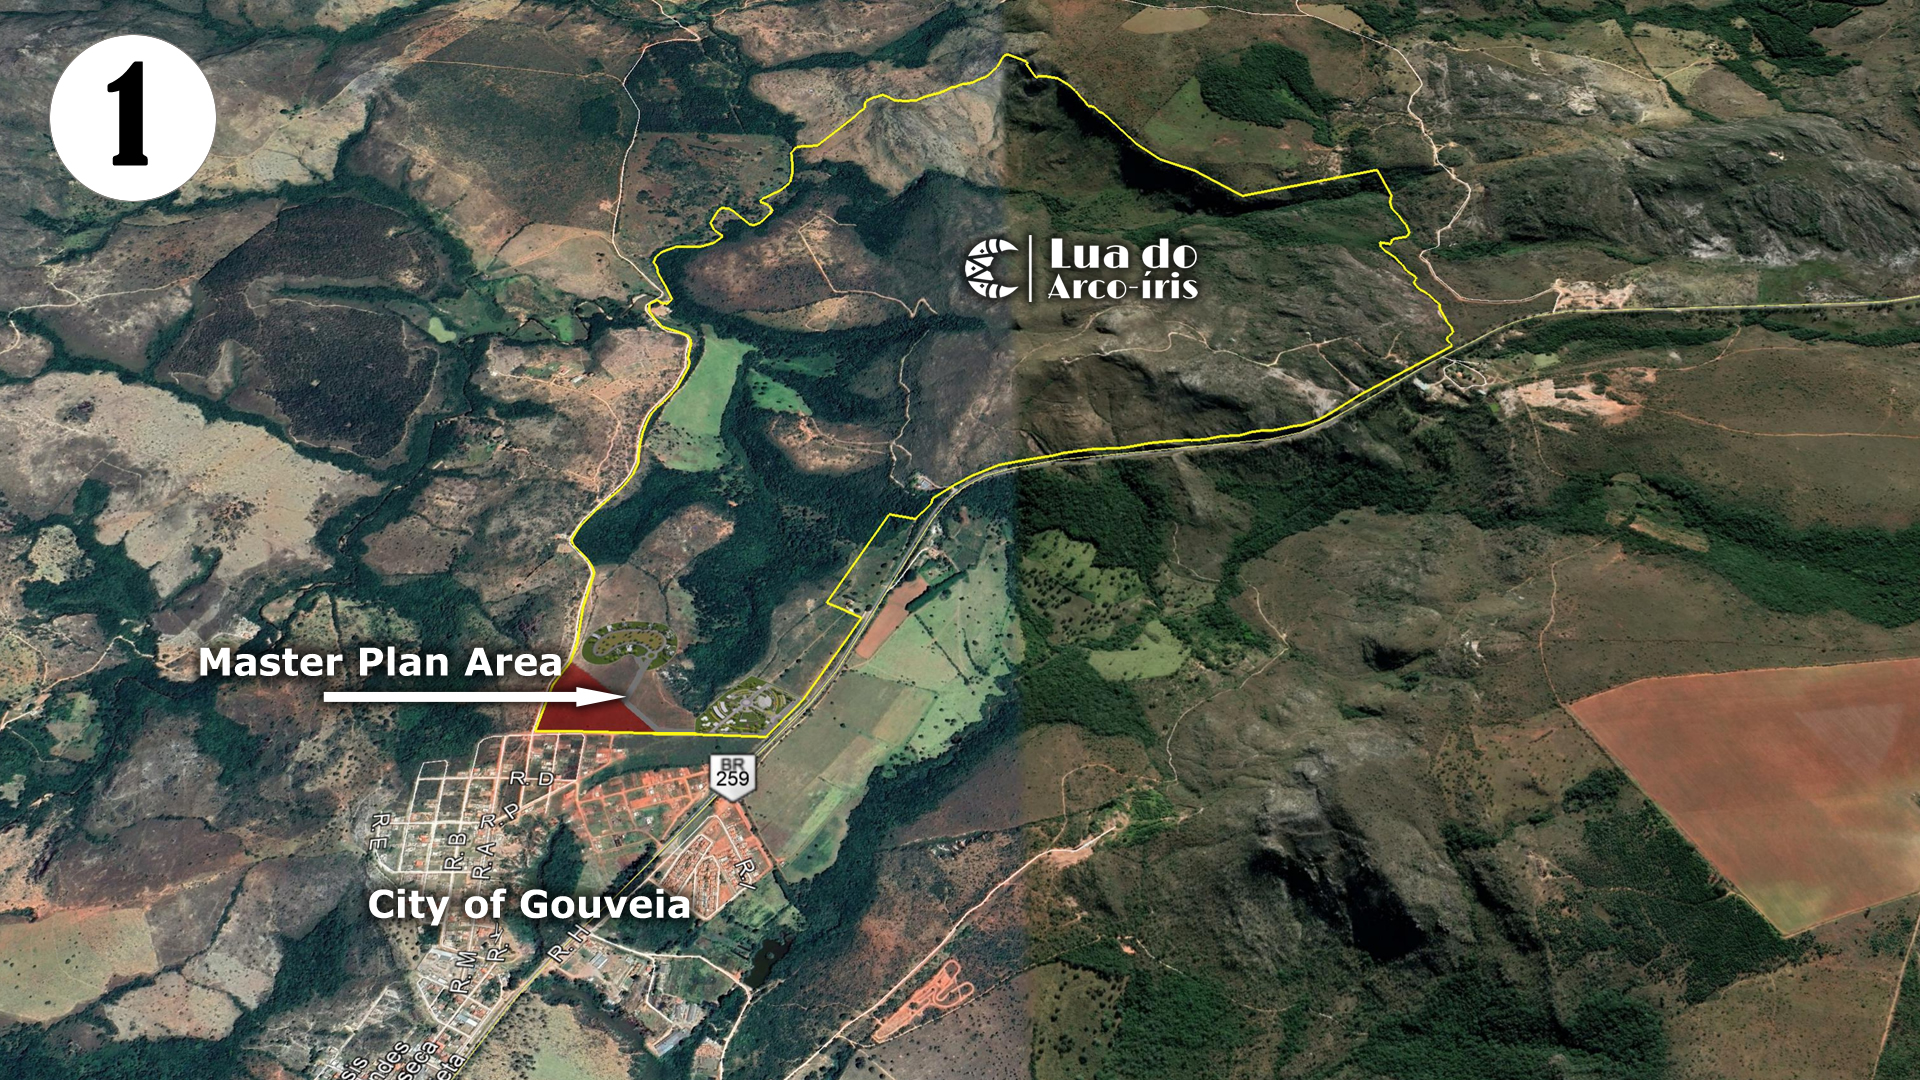 Google Earth map showing Lua do Arco-iris property